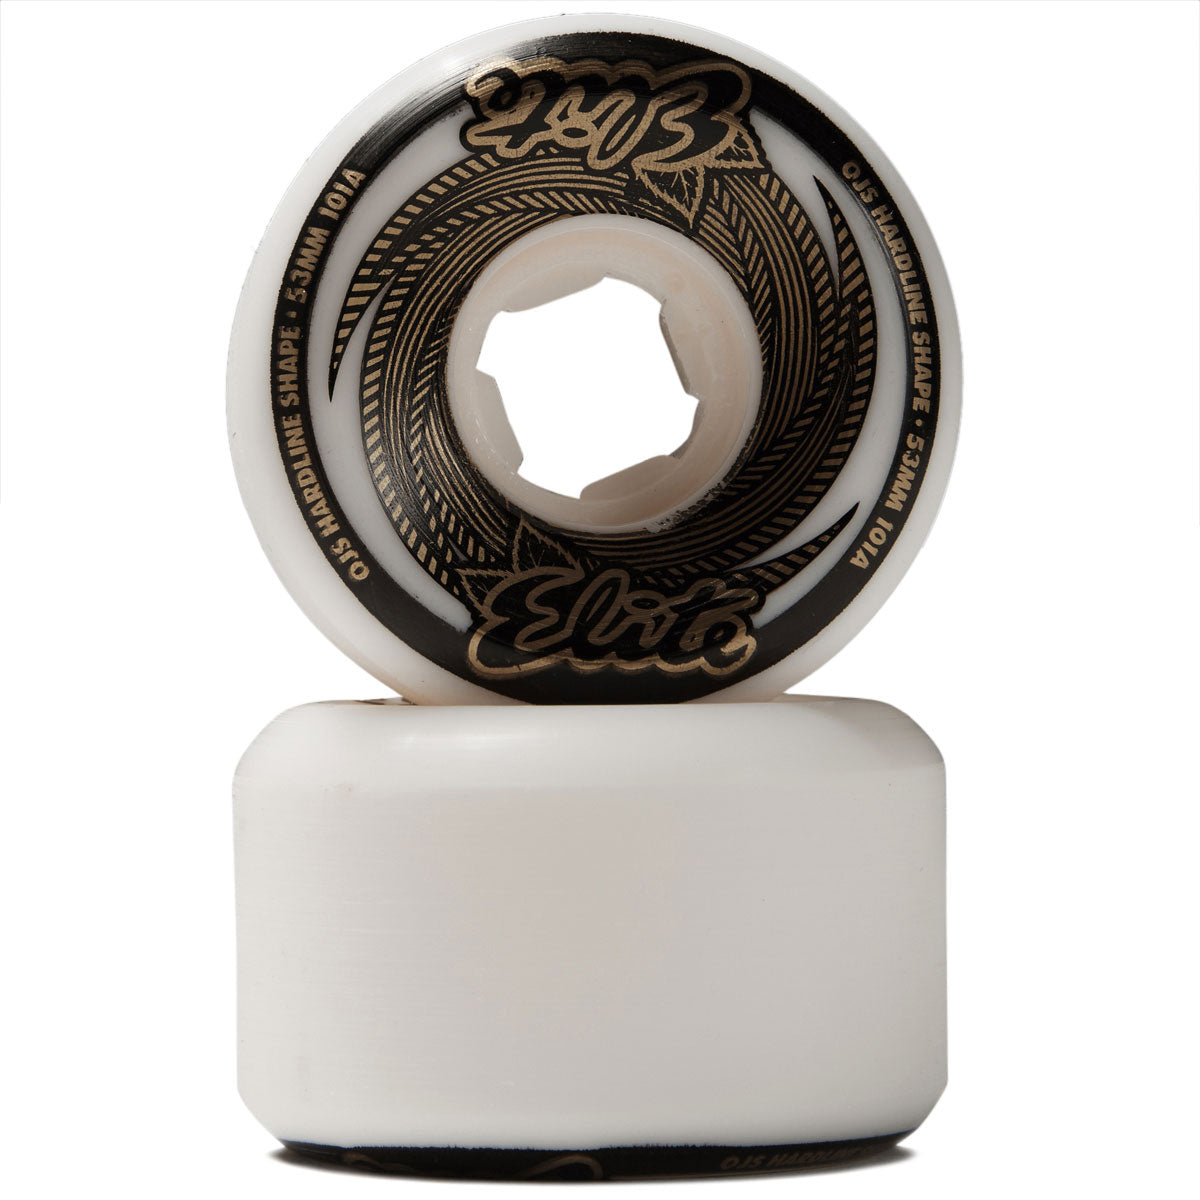 OJ Elite Hardline 101a Skateboard Wheels - White/Gold - 53mm image 2